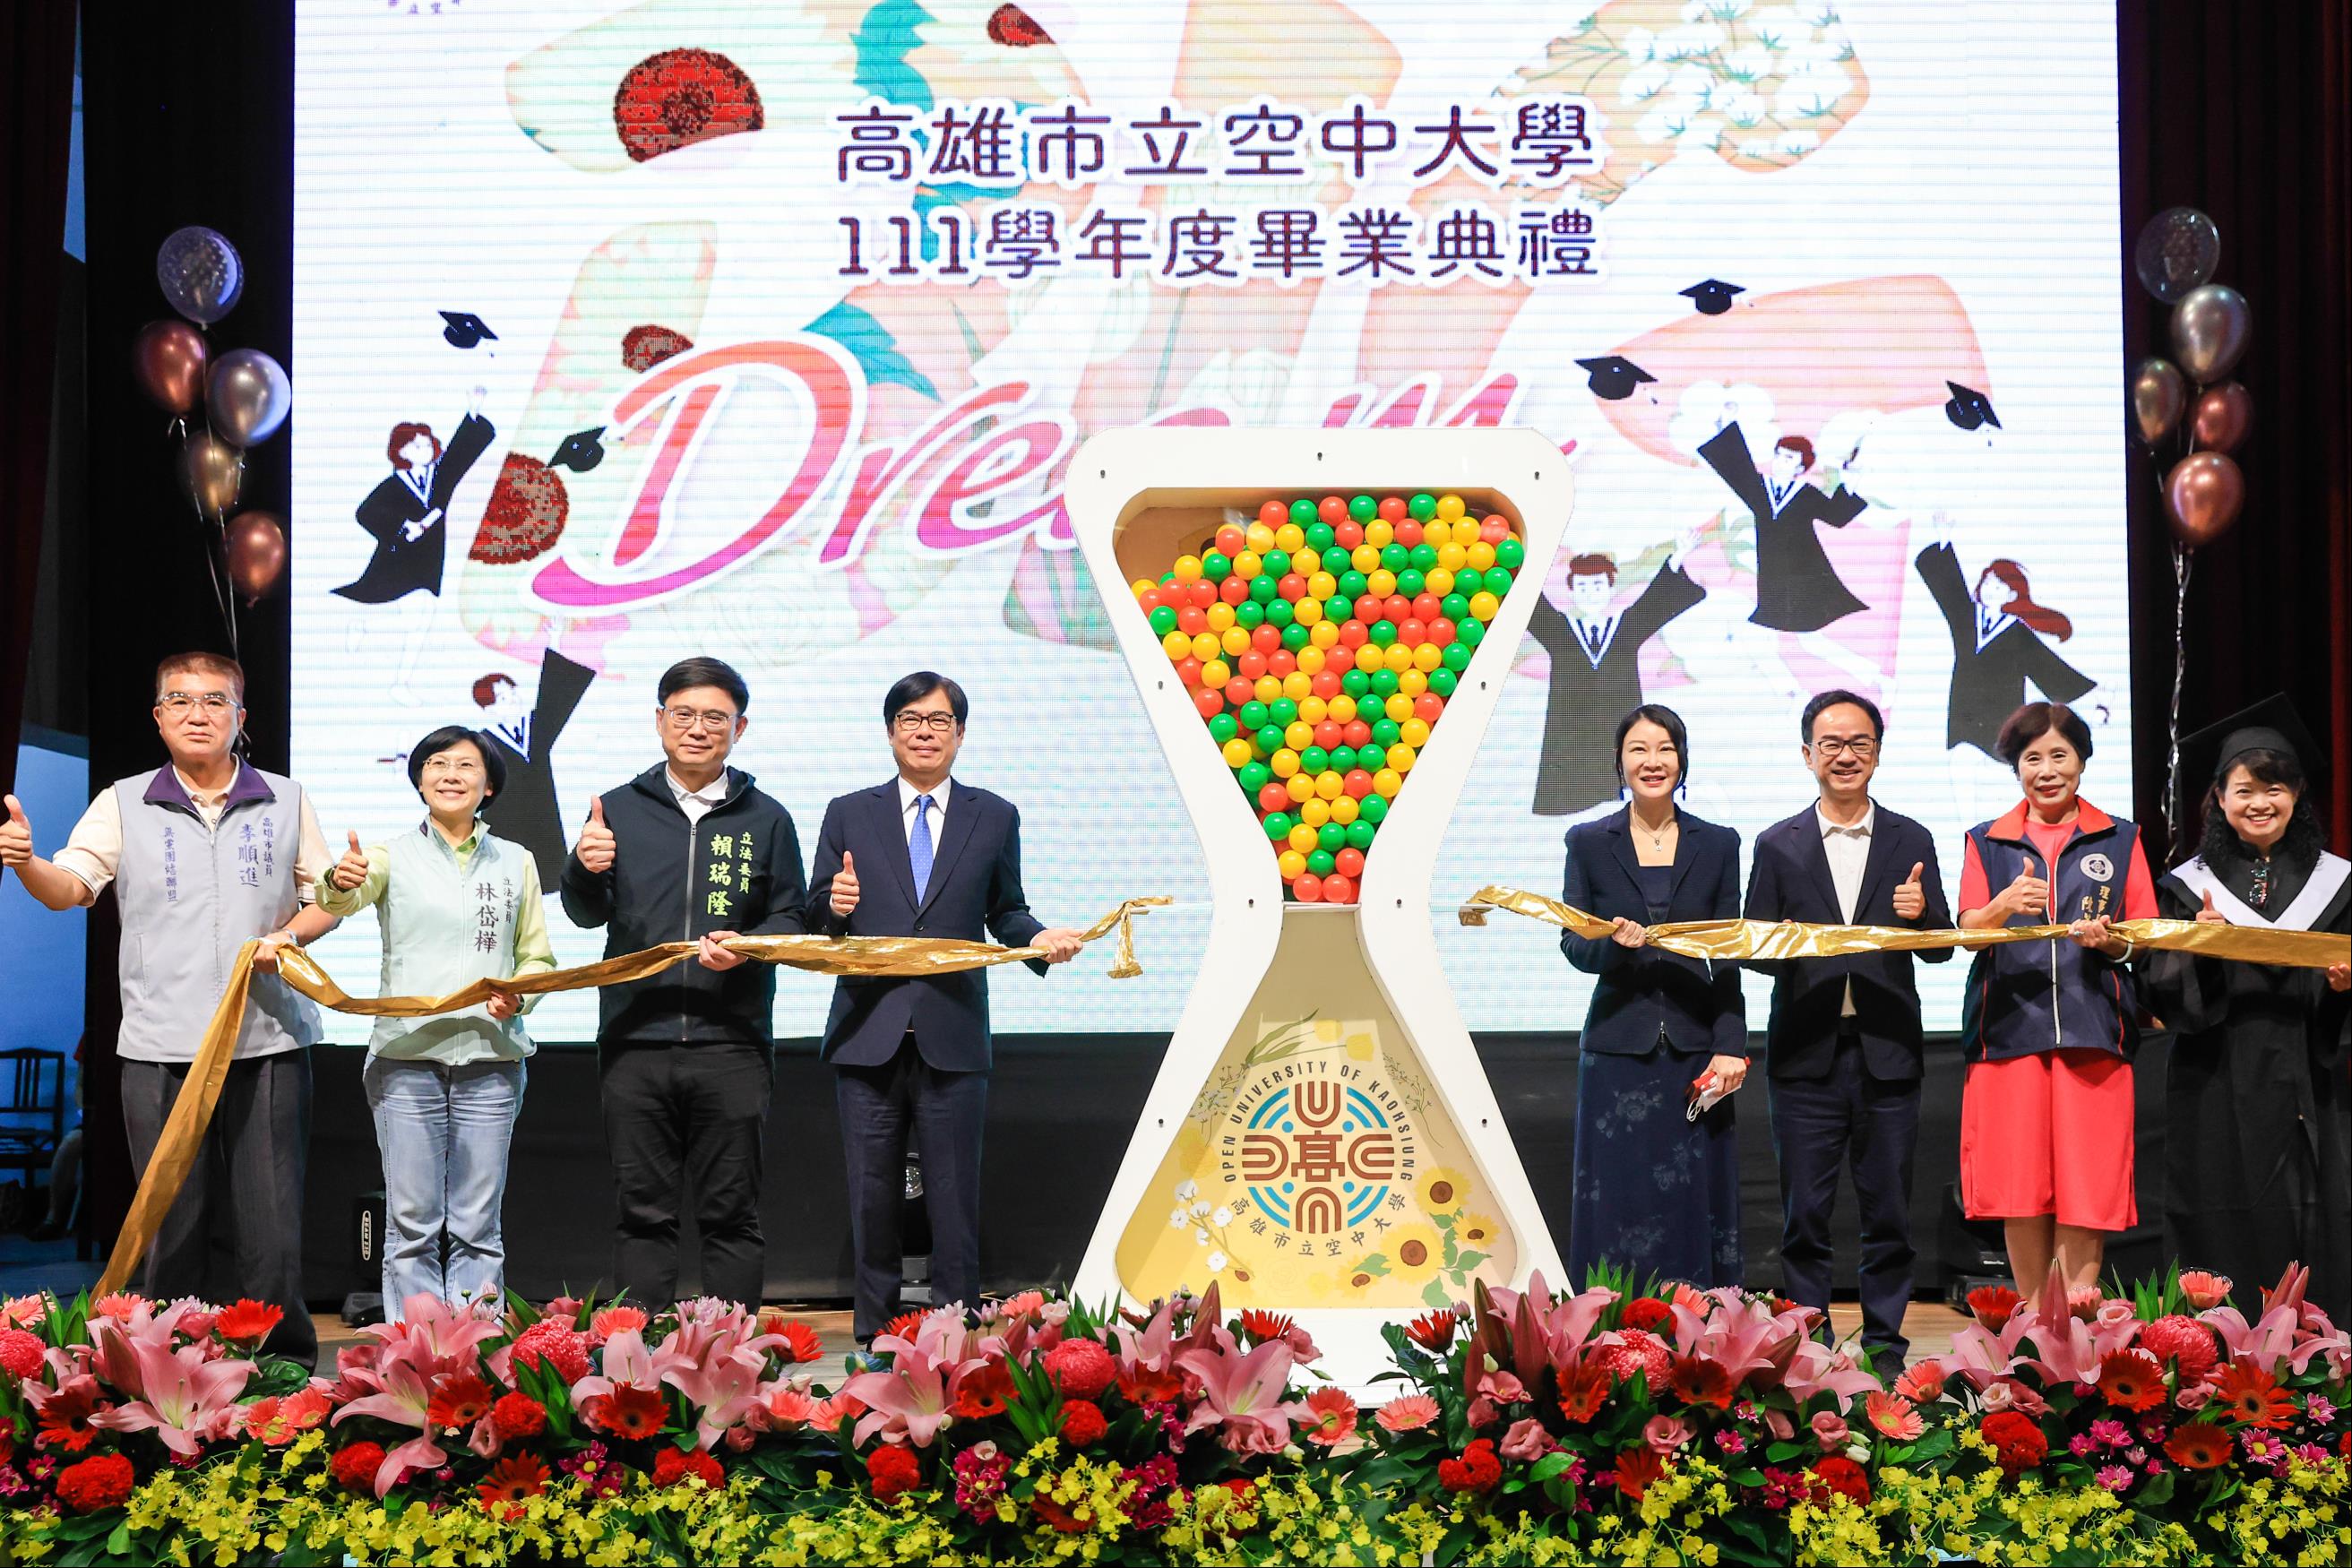 高雄空大畢業典禮「Dream BIG」祝福儀式由市長陳其邁、校長劉嘉茹及與會貴賓們一同進行